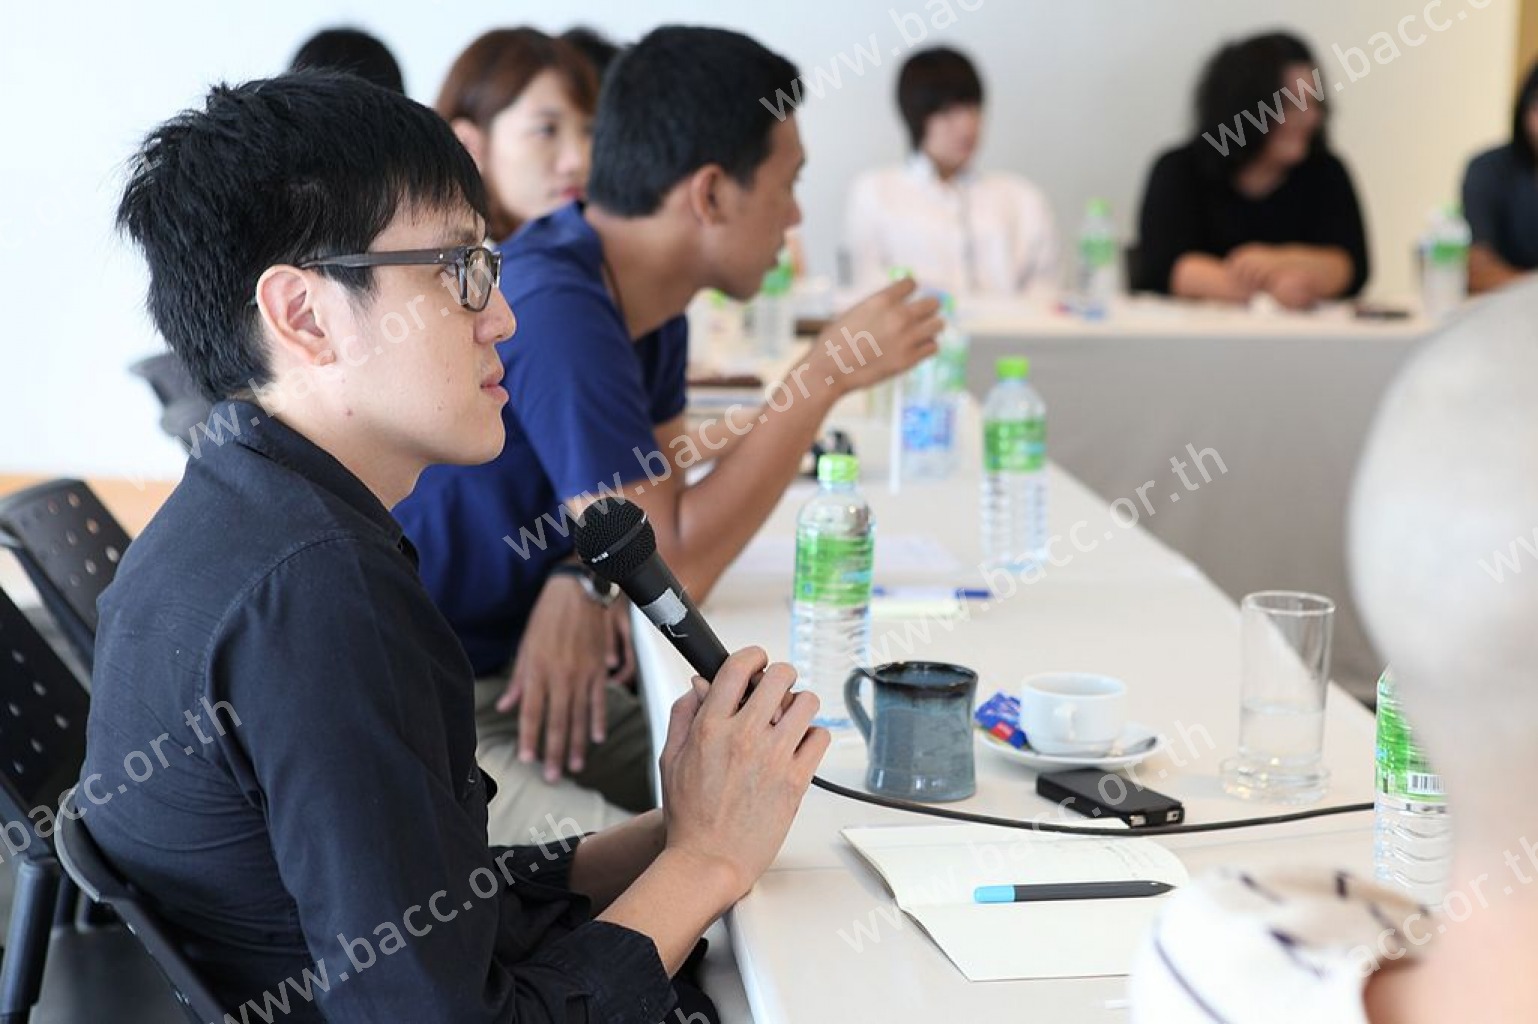 Bangkok Creative Writing Workshop I